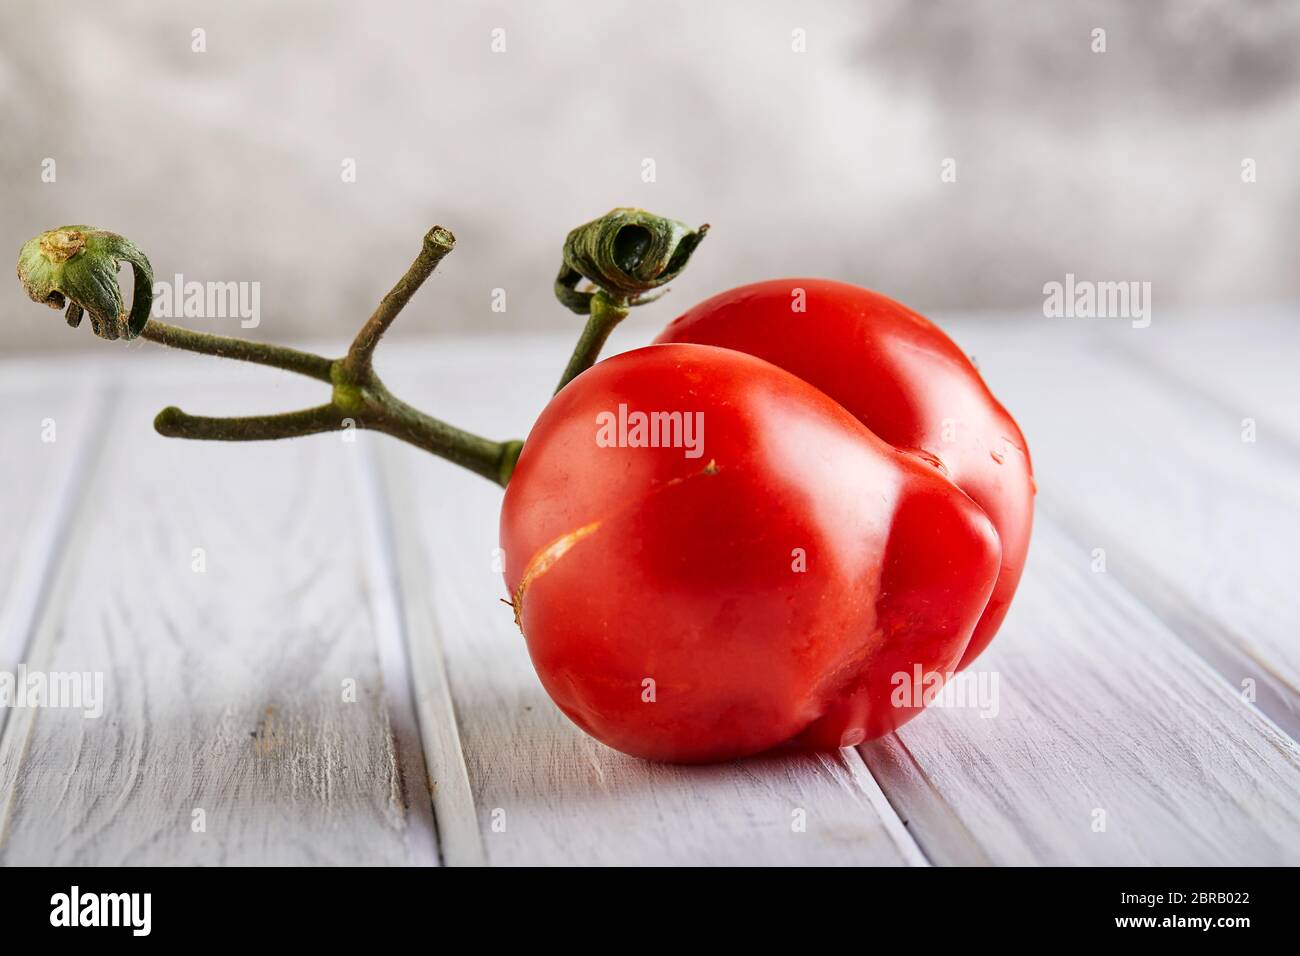 Hässliches Obst oder Gemüse. Stark fehlgeformte Mutante Tomate